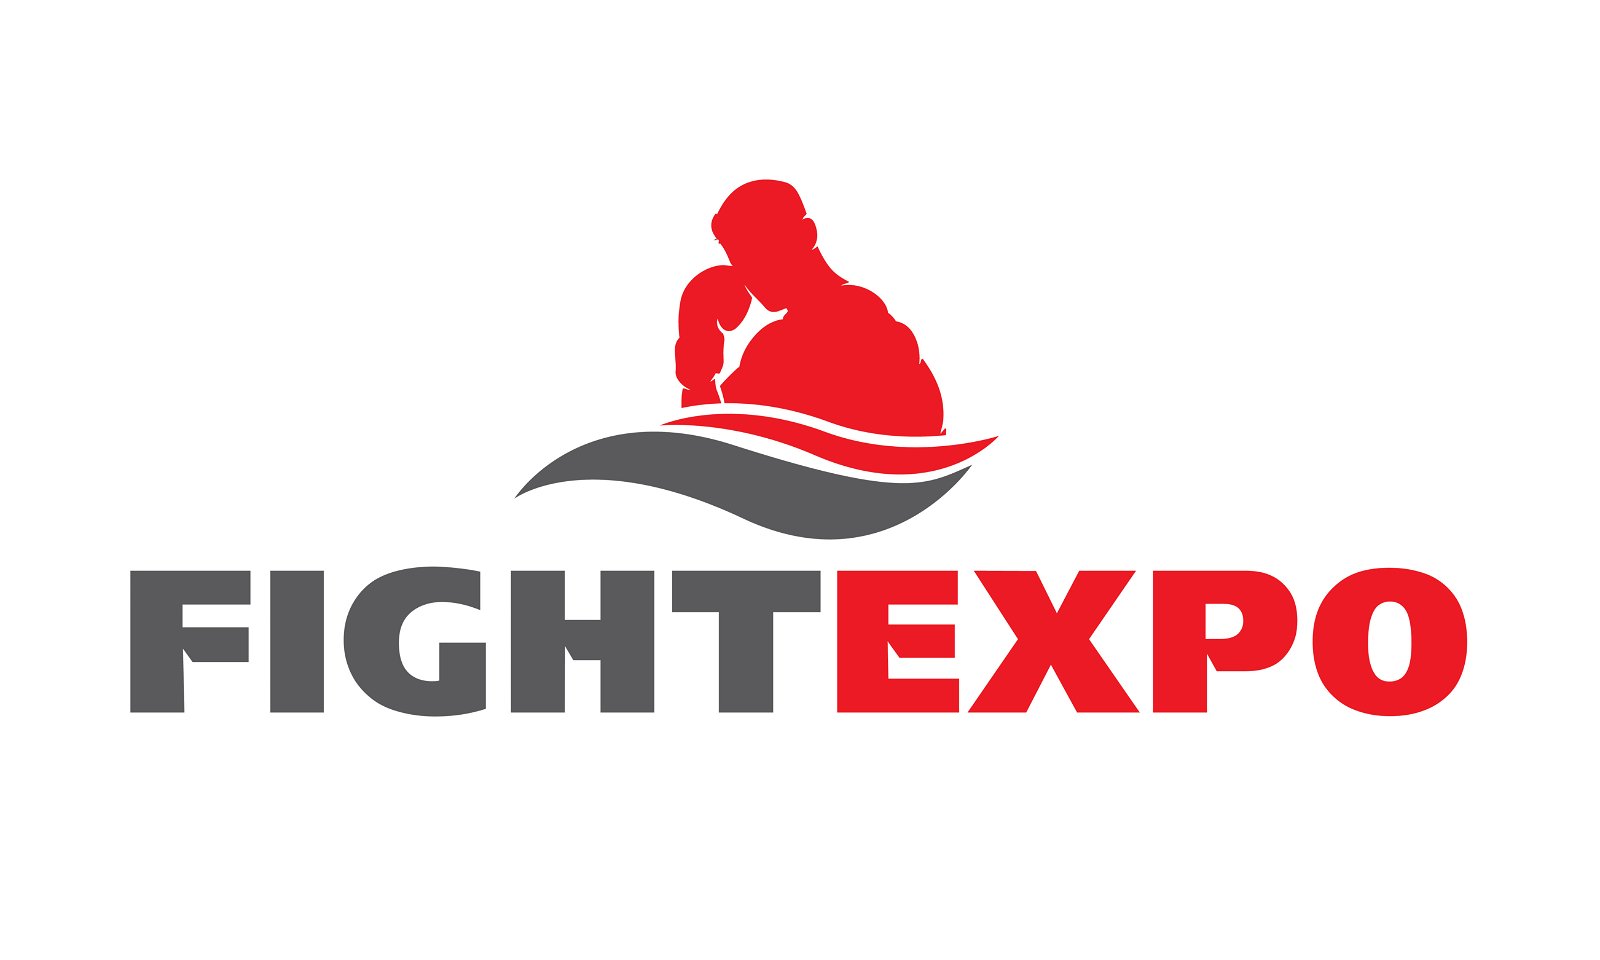 FightExpo.com - Creative brandable domain for sale